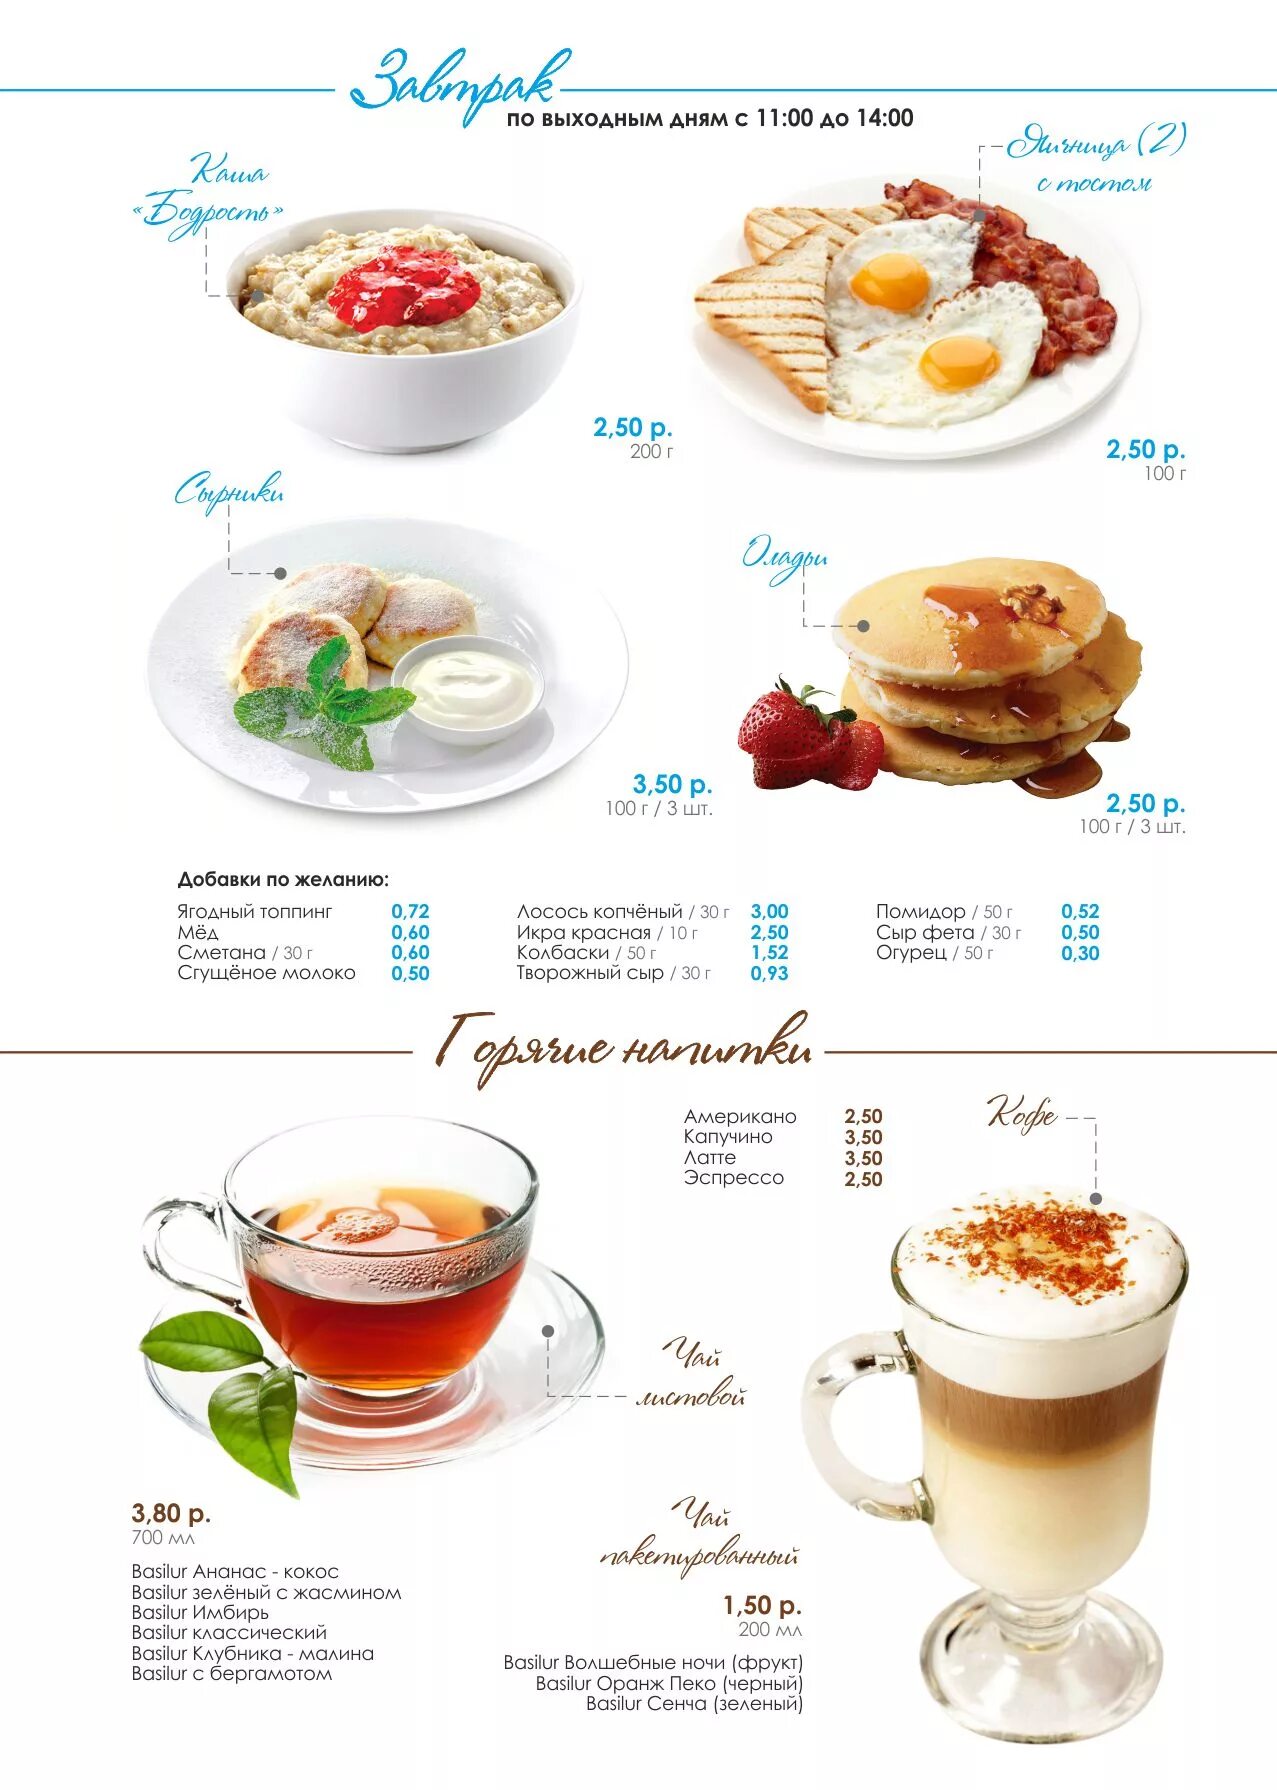 Меню завтраков в ресторане. Меню завтраков. Завтраки в кафе меню. Завтраки в кофейне меню. Завтрак в отеле меню.